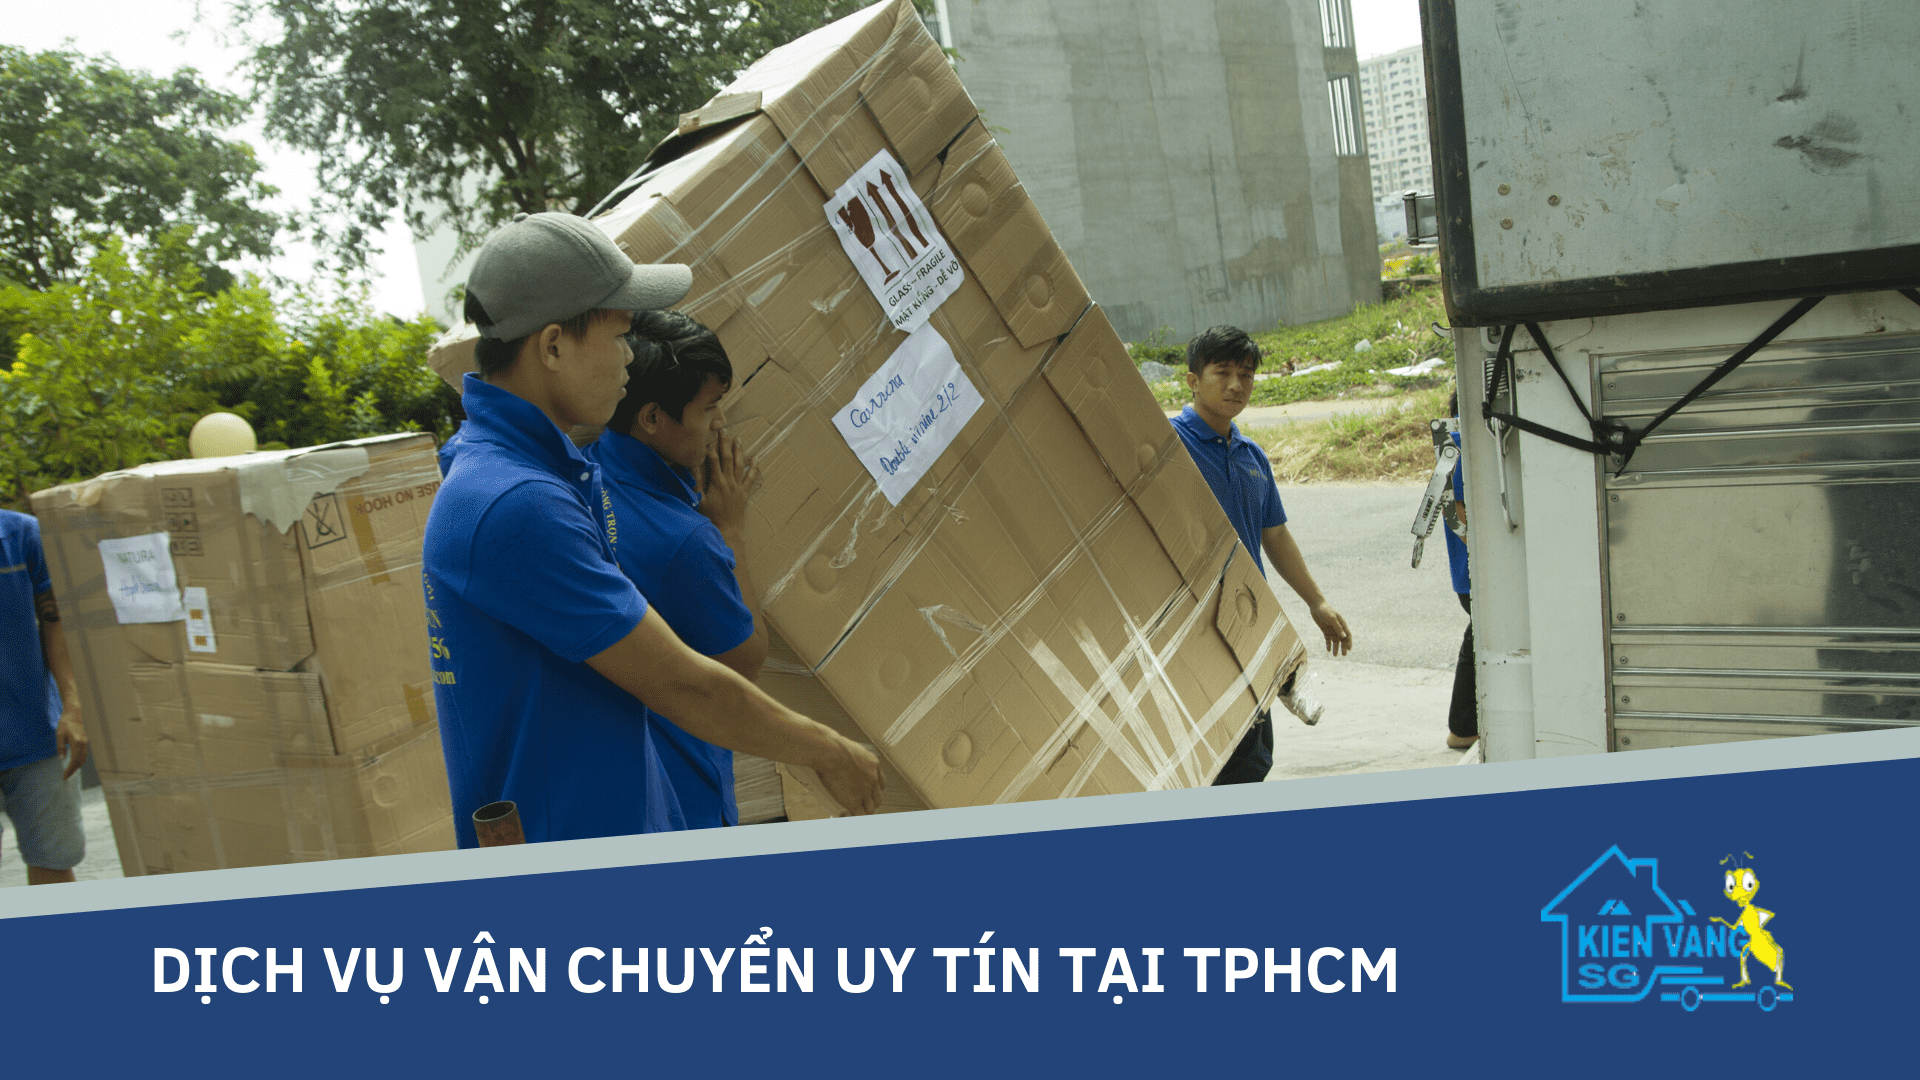 Dịch vụ vận chuyển uy tín tại TPHCM